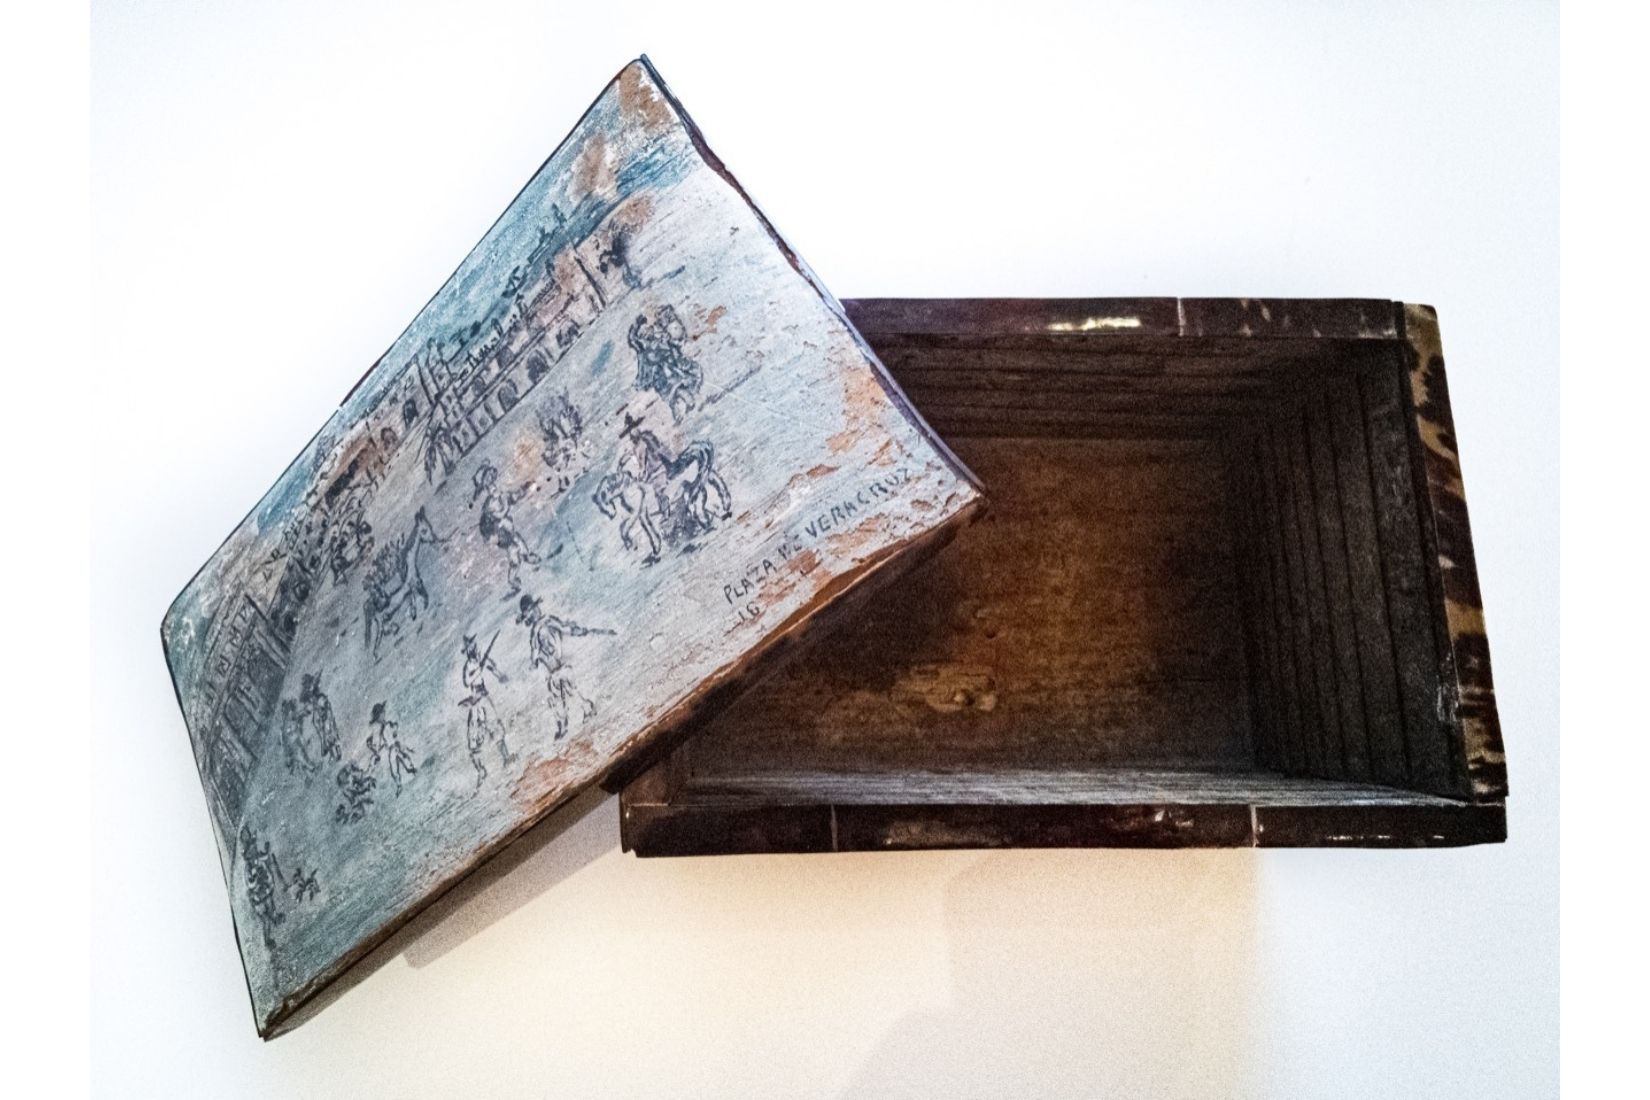 Caja de madera policromada. Artesano desconocido. Veracruz. Col. Marie Thérèse Hermand de Arango. (Foto: Patricia Suárez).